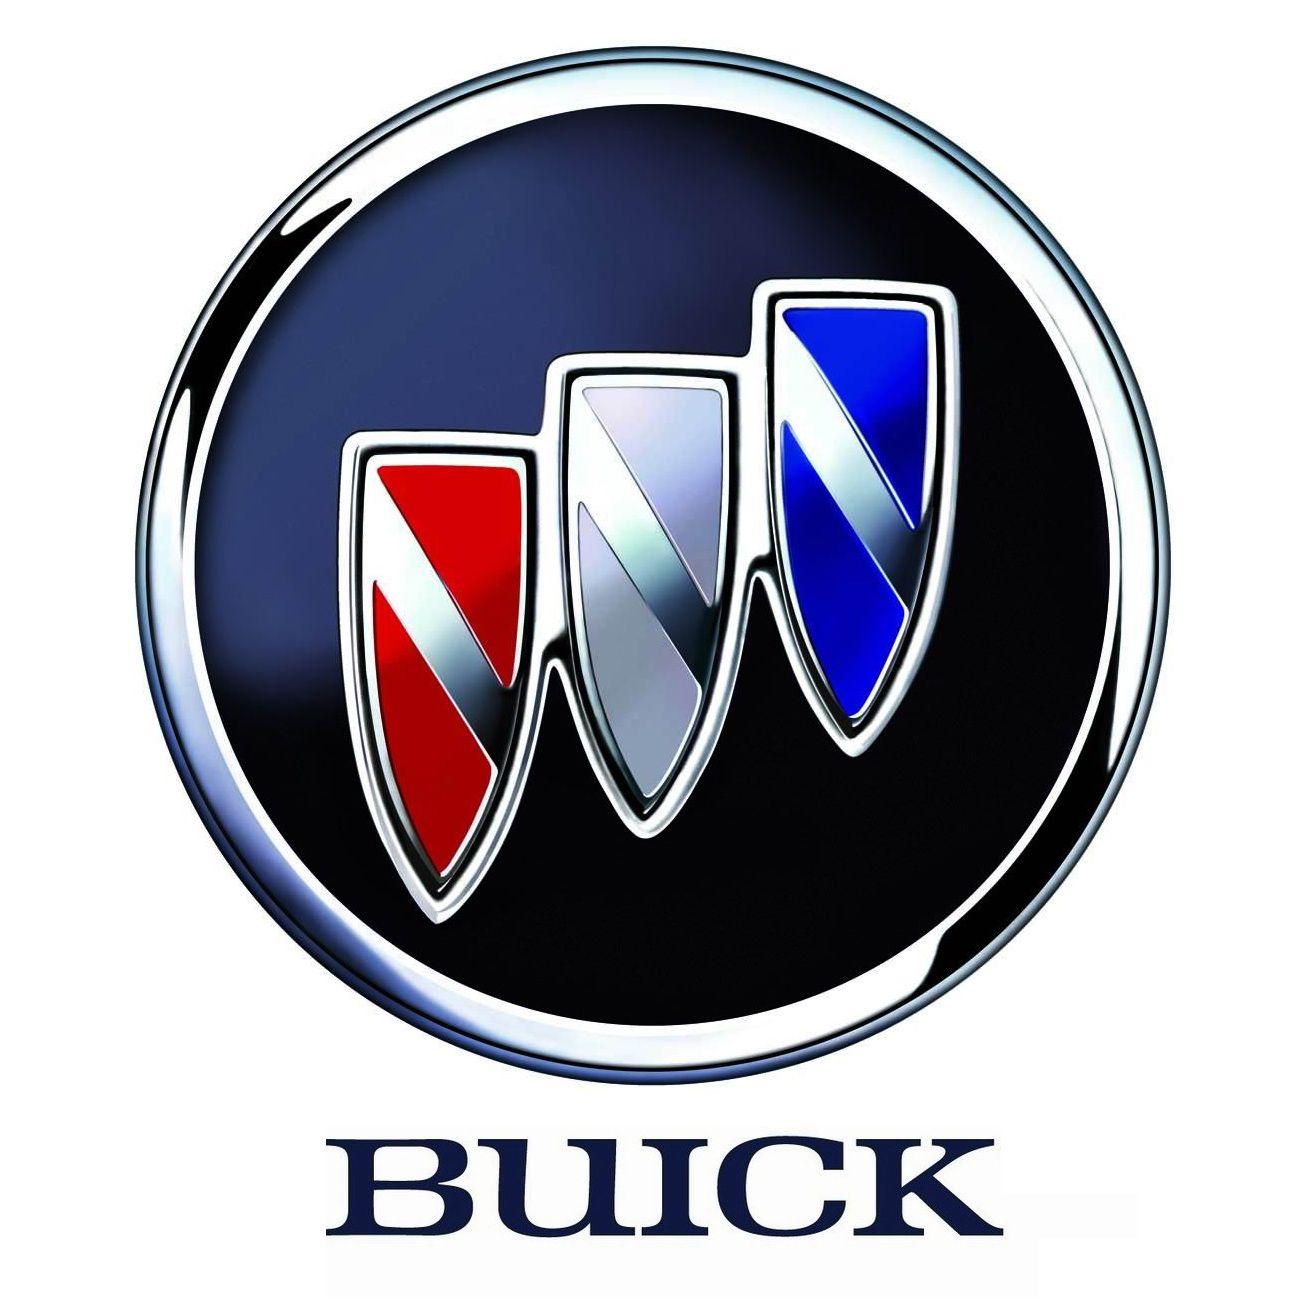 2014 Buick Logo - Buick Regal